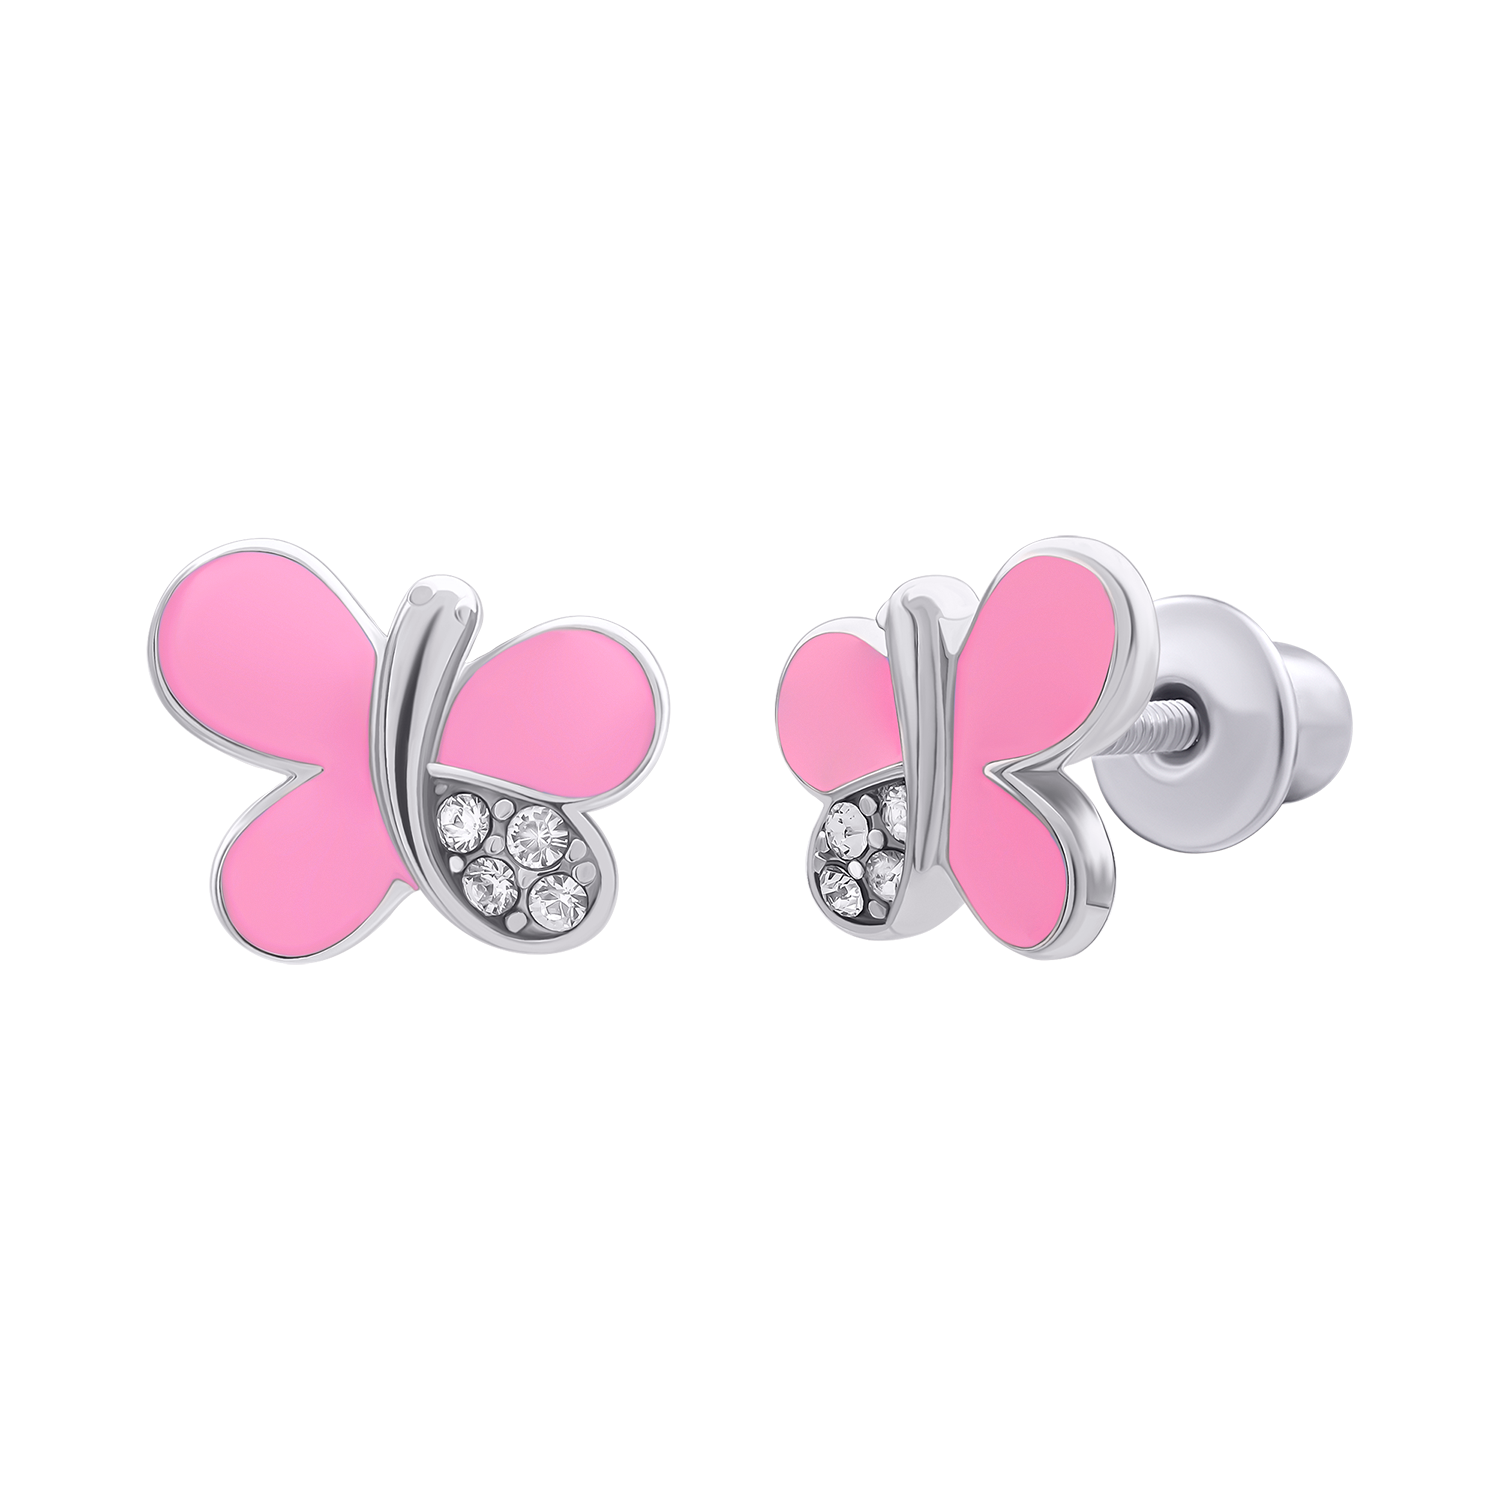 Σκουλαρίκια με λαμπερές πεταλούδες σε ροζ σμάλτο και κυβική ζιργκόνια